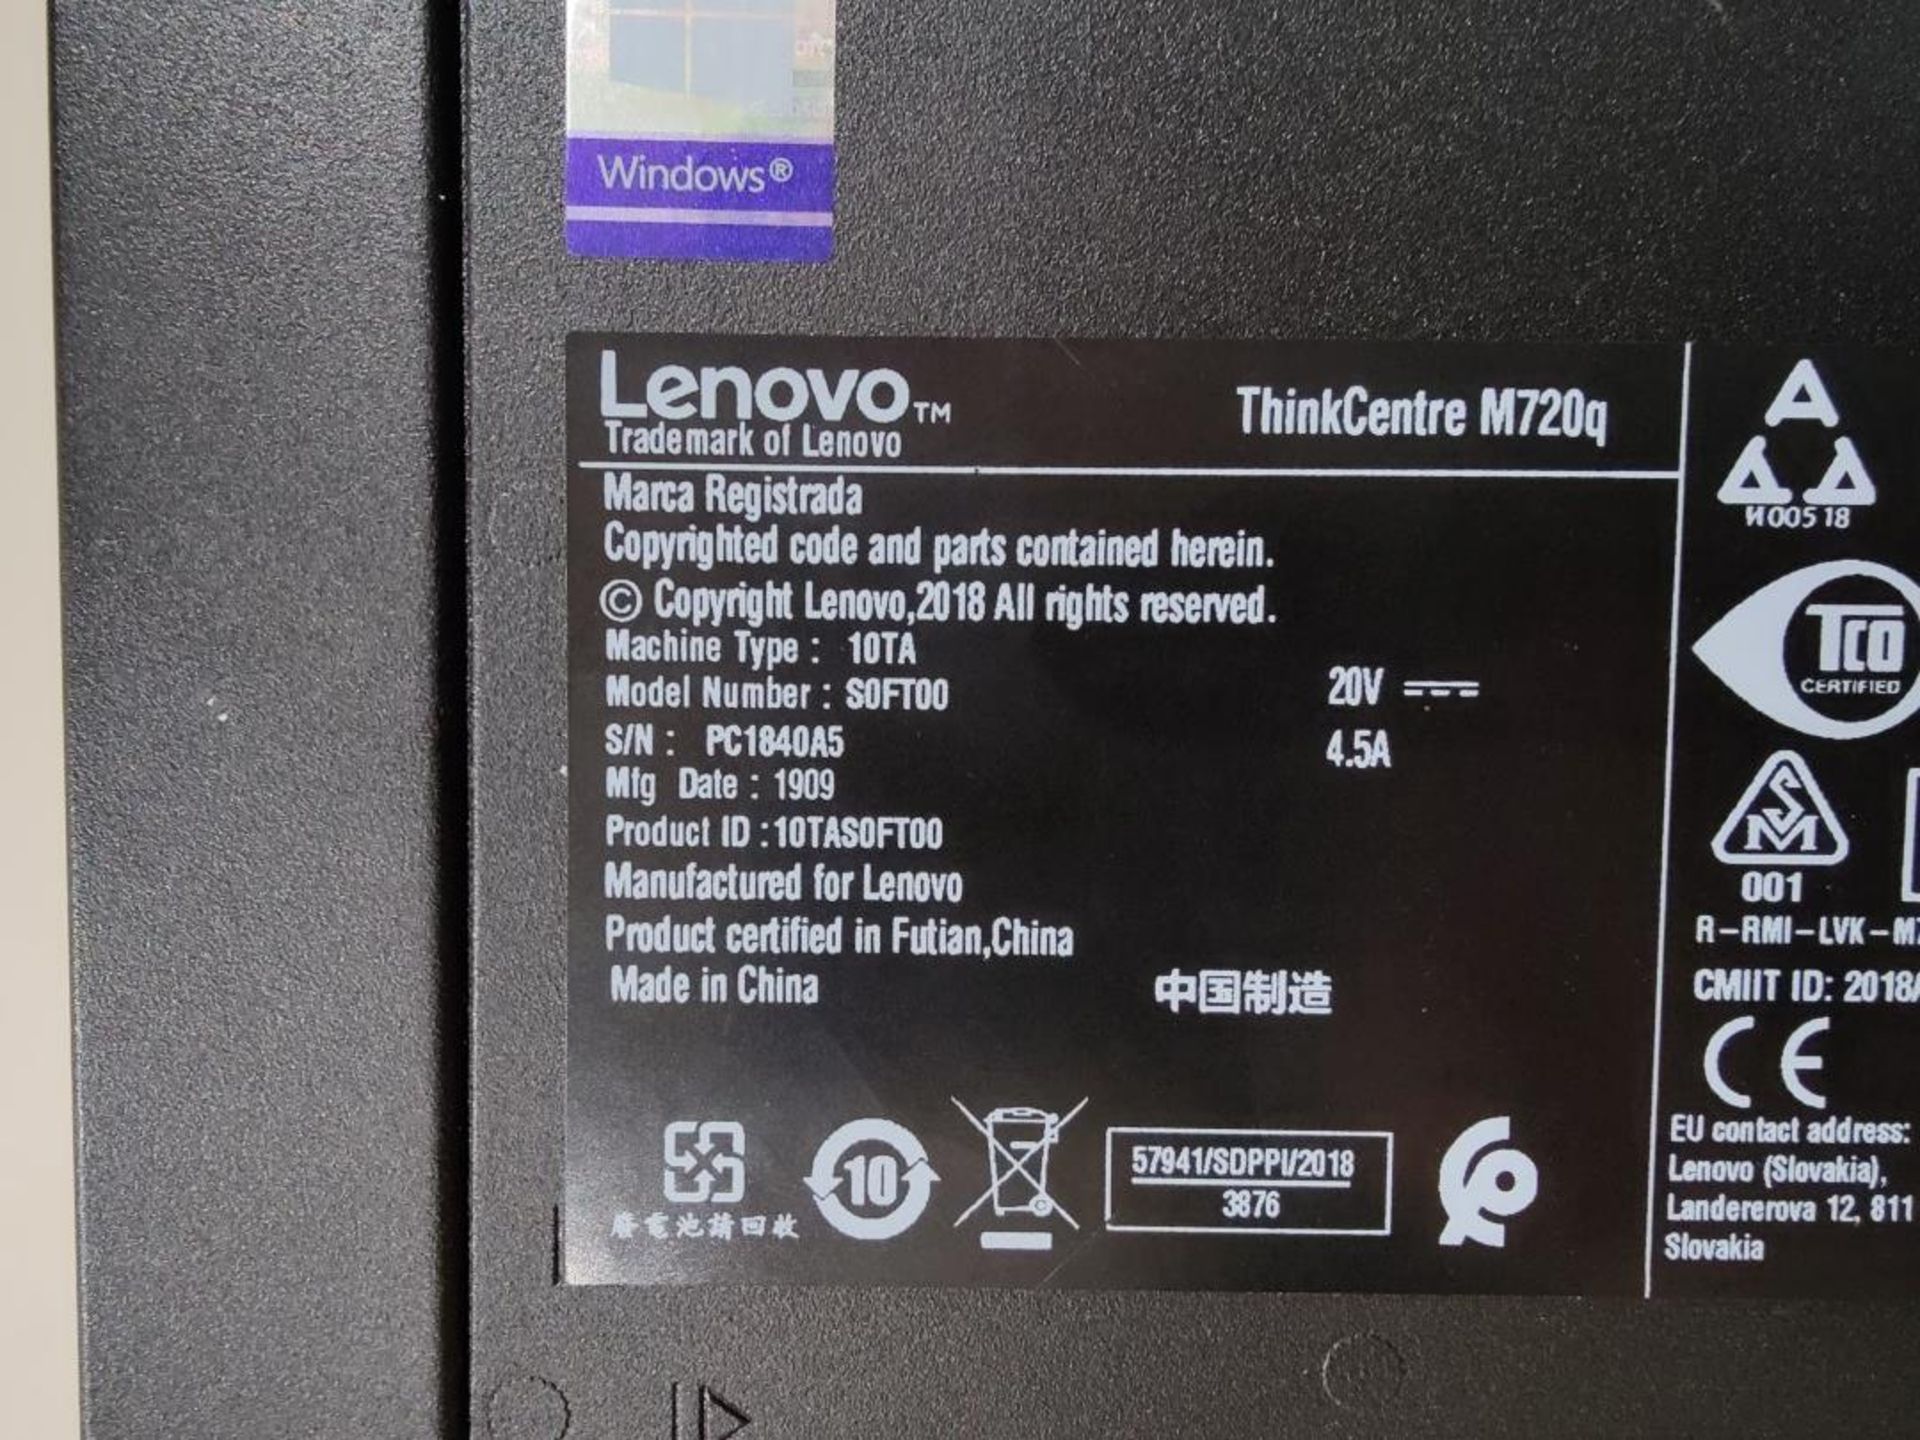 1 x Lenovo ThinkCentre M720Q Mini PC - Intel i5-8400t 8th Gen Processor, 8gb DDR4, 256GB M.2 SSD - Image 7 of 15